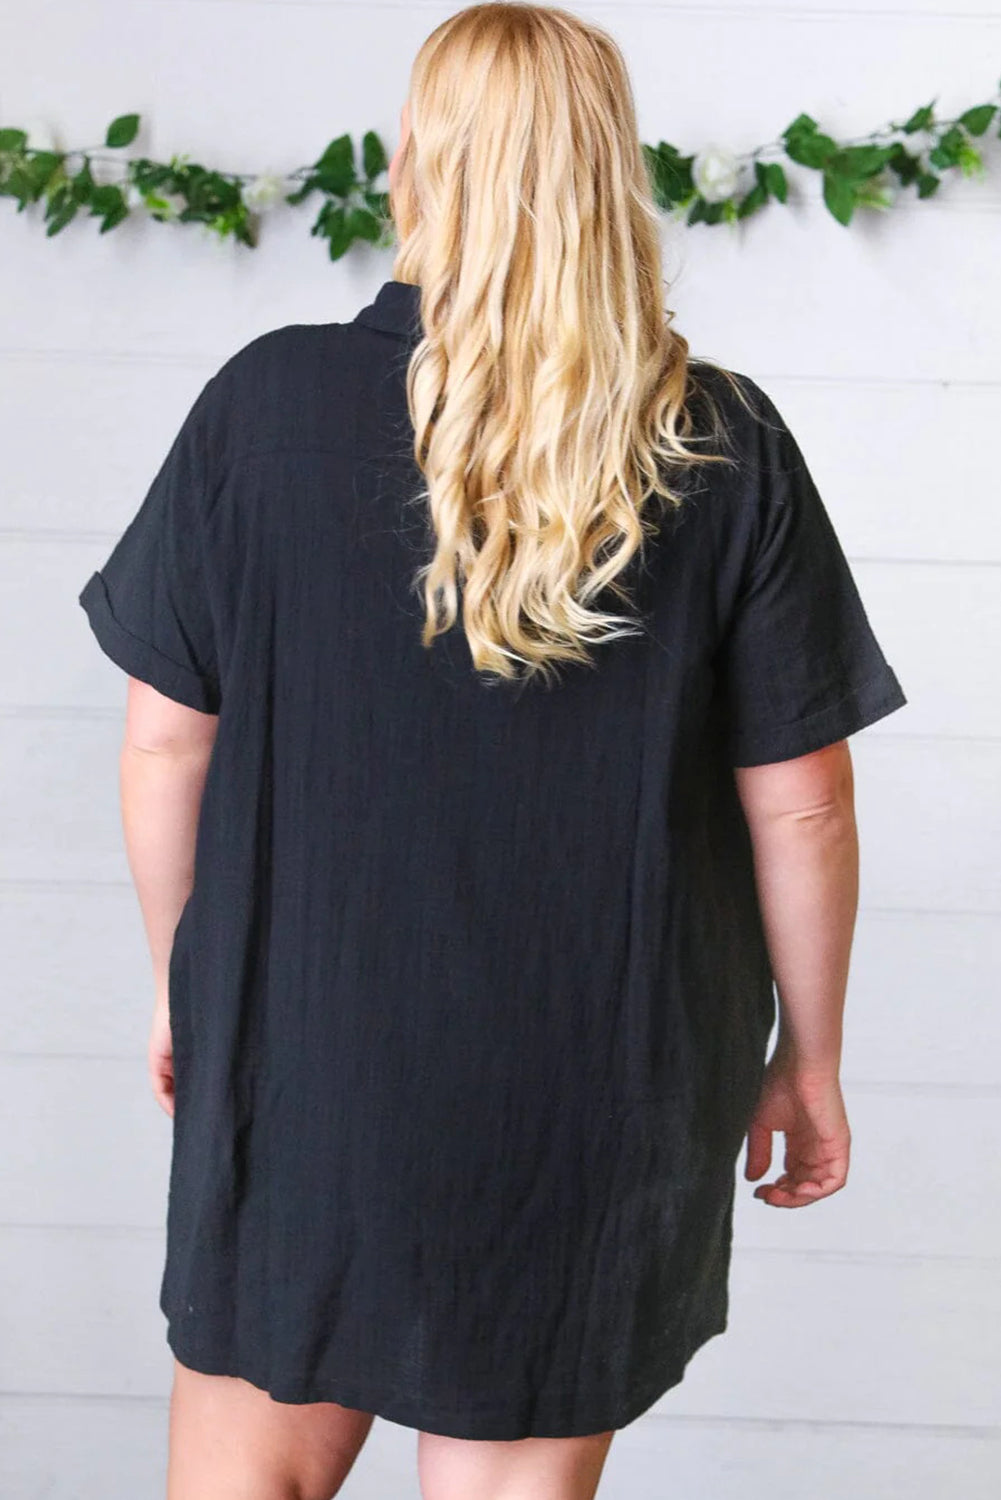 Black Button-Up Shirt Dress (Plus Size)Black Plus Size Buttoned Shirt Dress